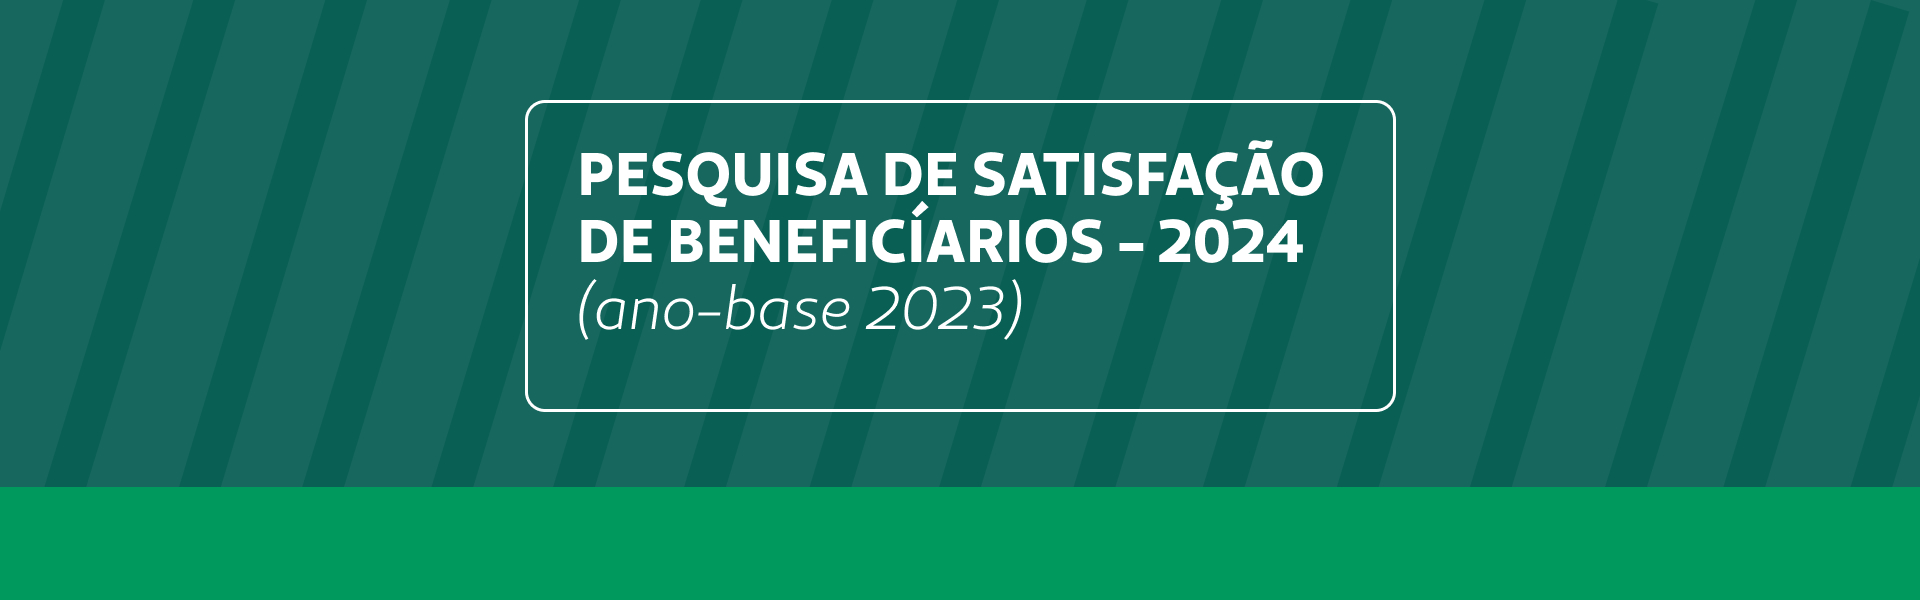 Pesquisa de Satisfação de Beneficiários 2024 (ano-base 2023)